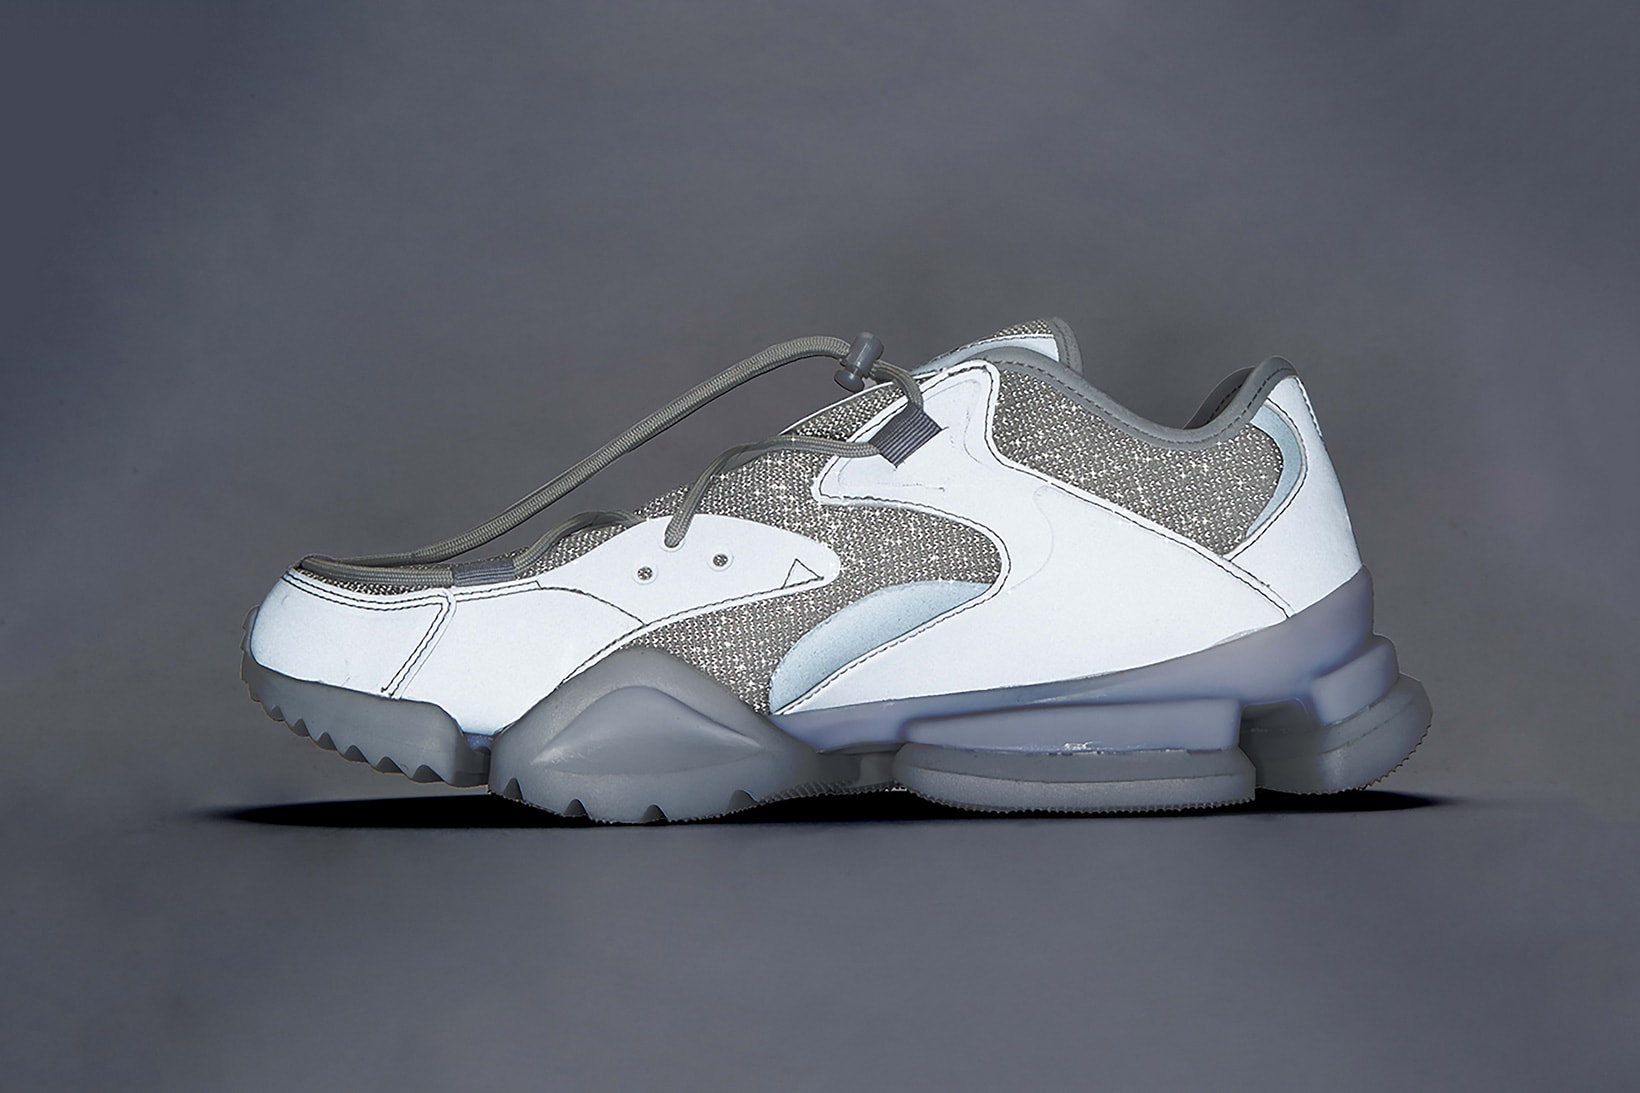 ssense reebok run.r 96 full moon release date 2018 june footwear grey gray silver 3m reflective